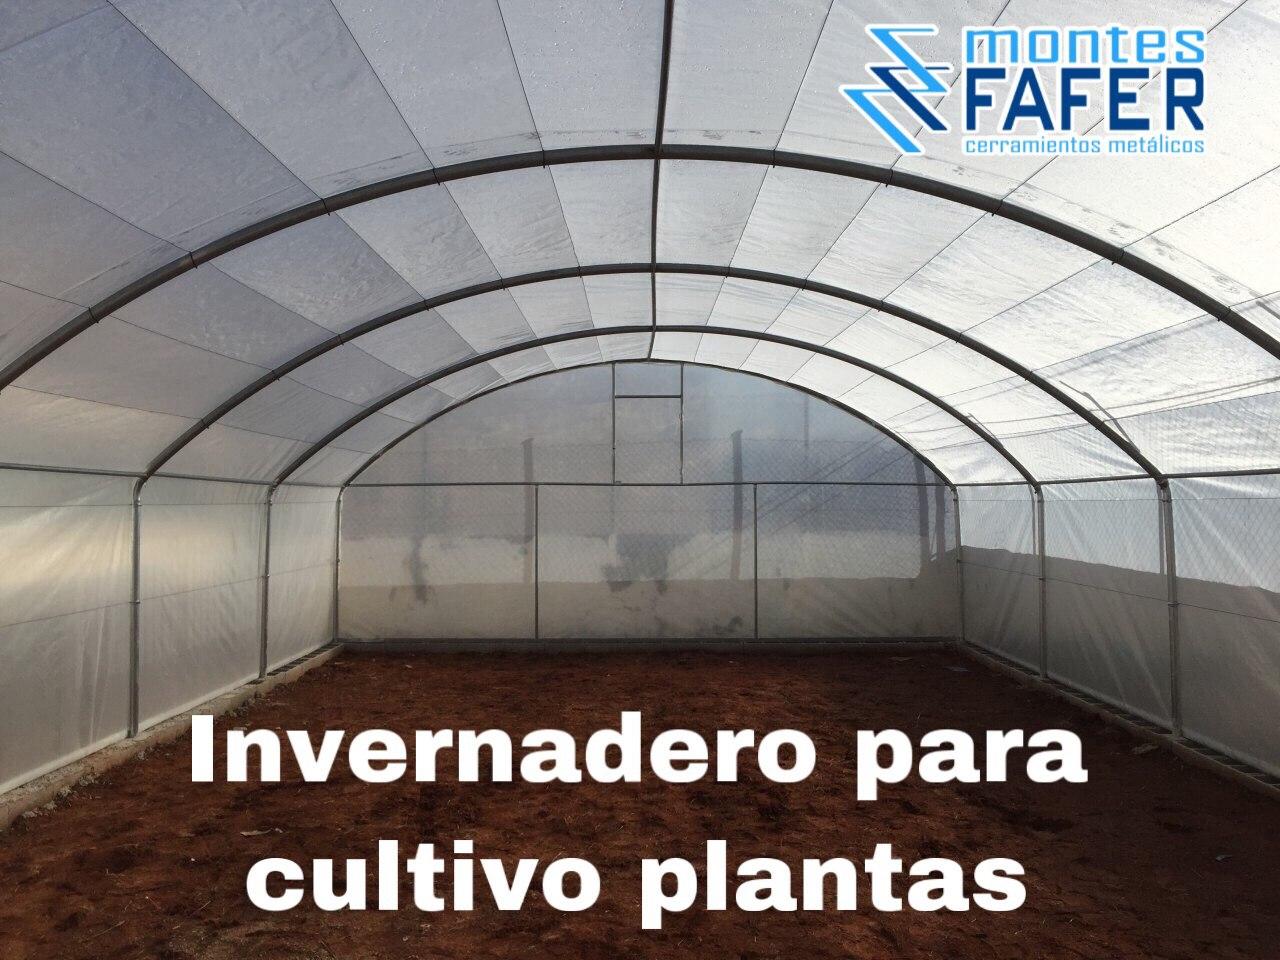 Invernadero para cultivo de plantas MontesFafer